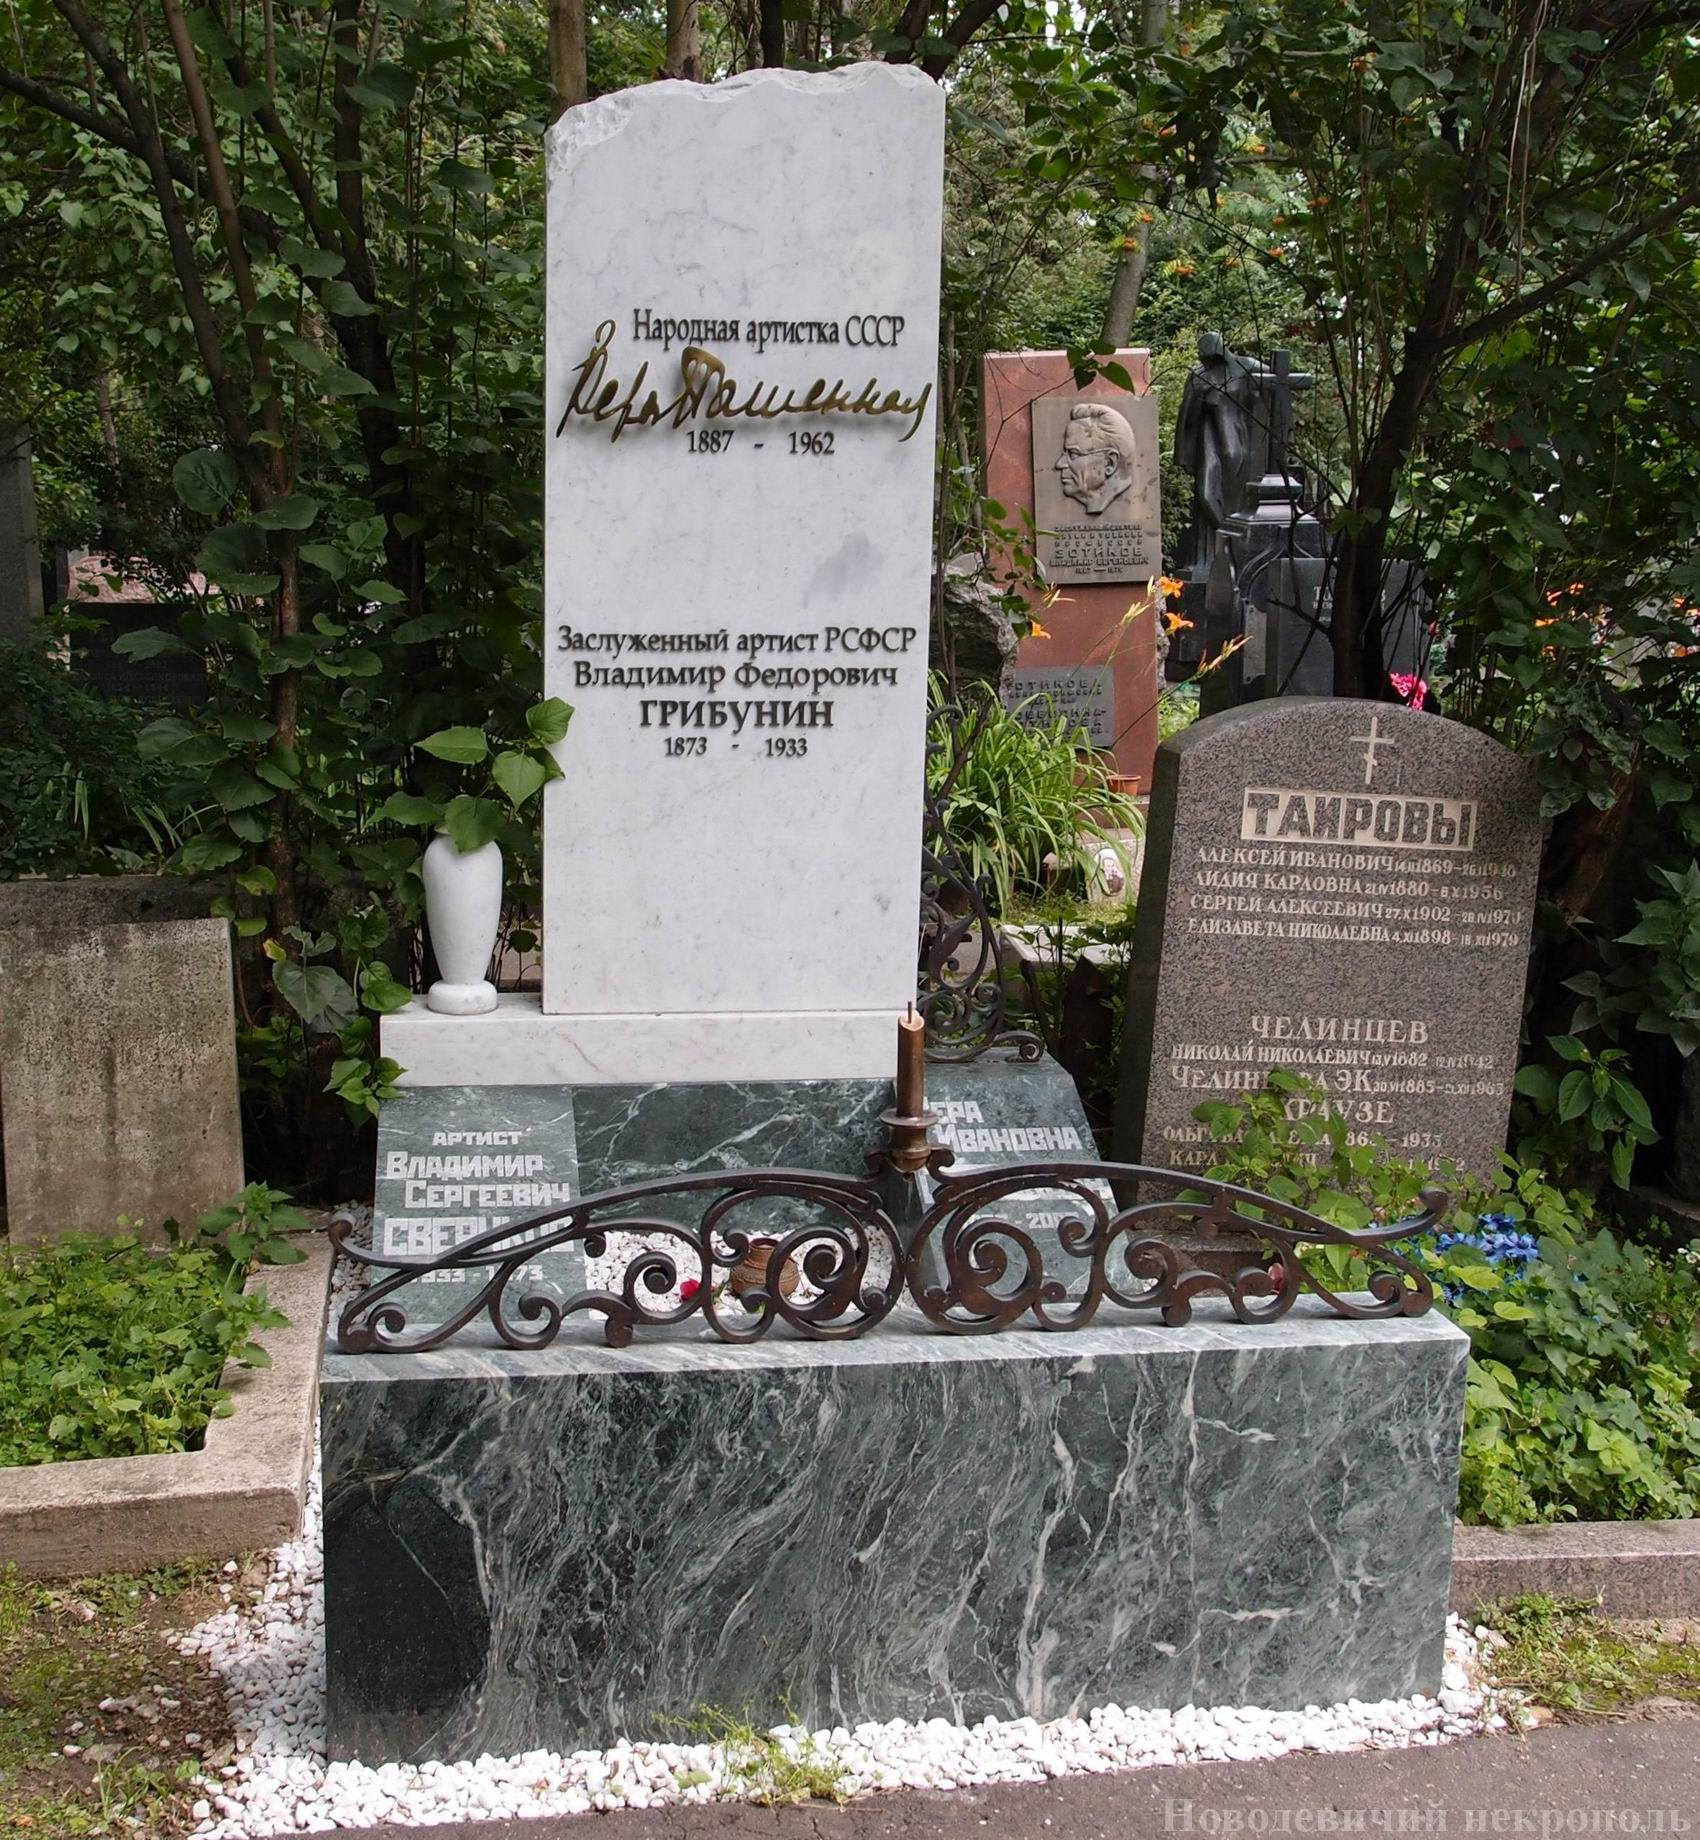 Памятник на могиле Пашенной В.Н. (1887-1962) и Грибунин В.Ф. (1873-1933), худ. В.Шихарев, на Новодевичьем кладбище (2-7-18). Нажмите левую кнопку мыши чтобы увидеть вариант до 09.2012.